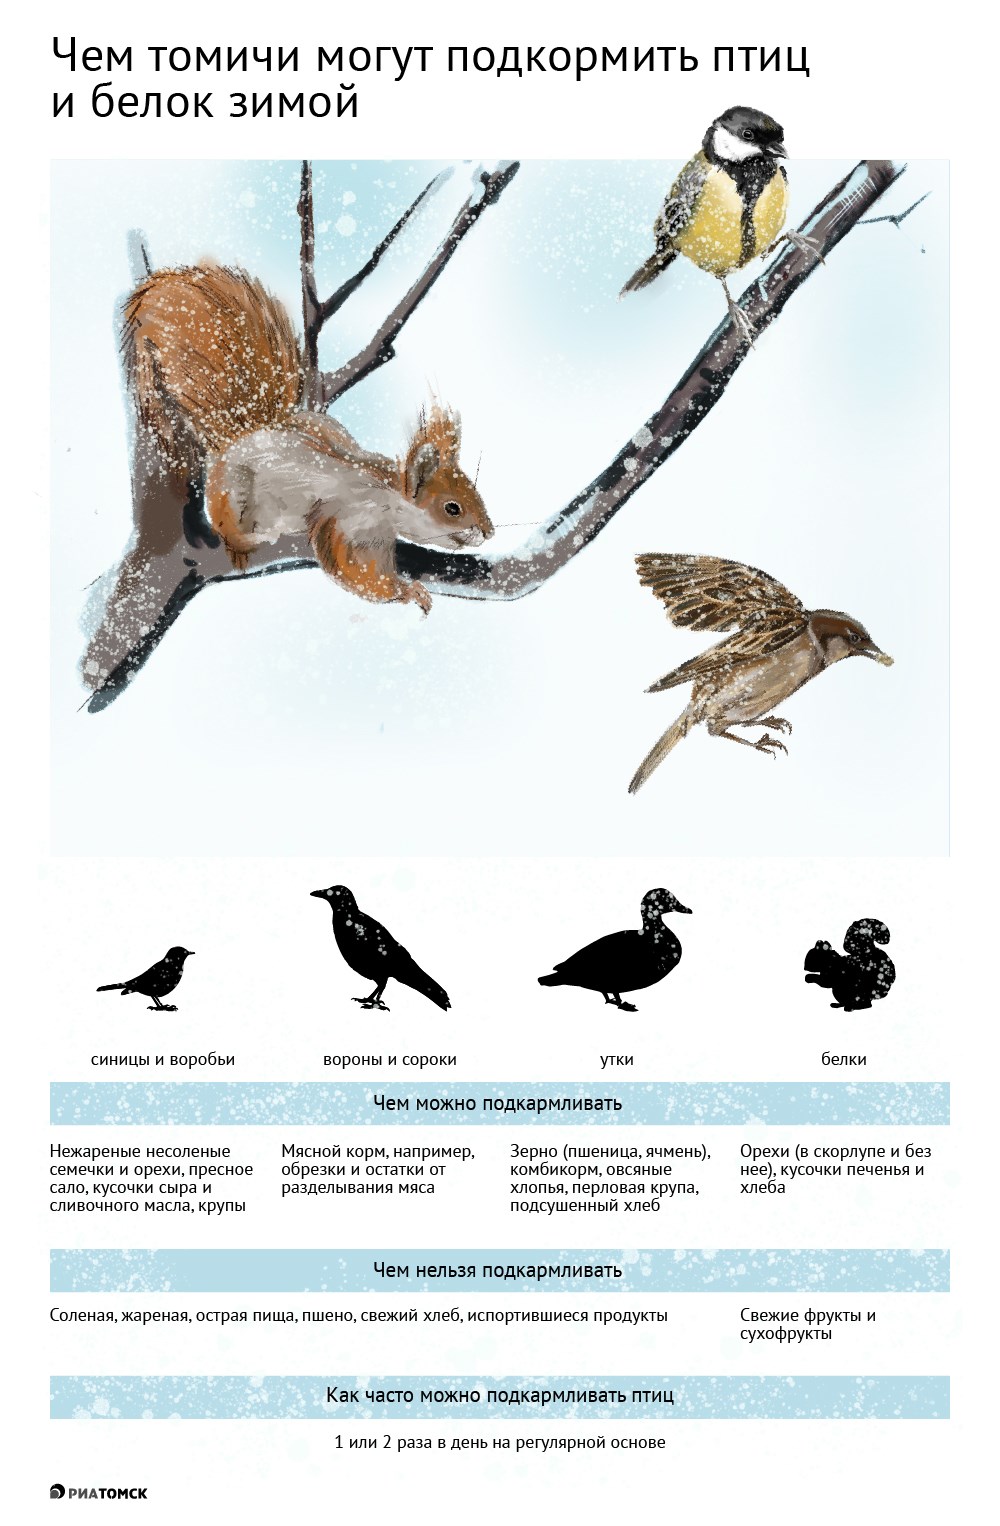 Многие томичи устанавливают кормушки для птиц и белок, заботятся о них в морозное время. Но нужно обязательно знать, чем можно, а чем нельзя подкармливать зимой пернатых и белок – об этом в инфографике РИА Томск.